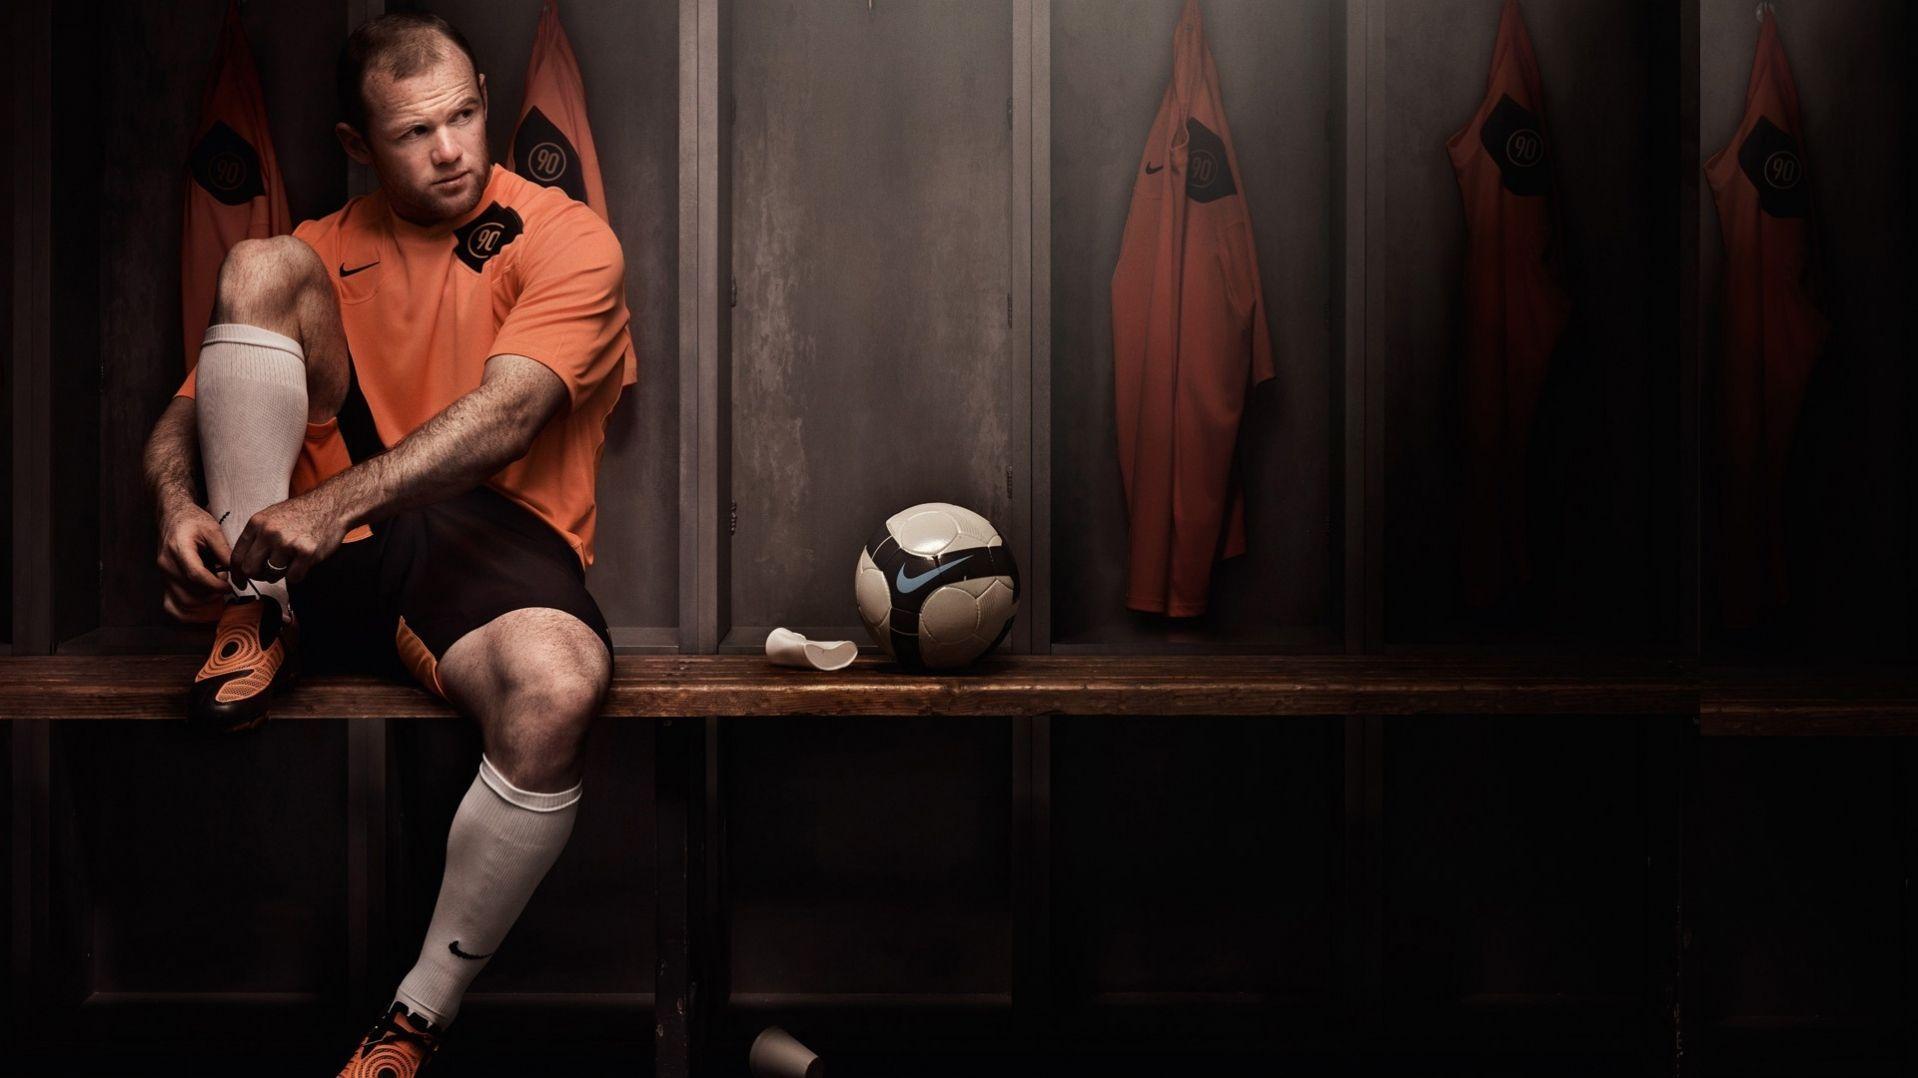 Wayne Rooney Locker Room HD Wallpaper. Football. Soccer, Football